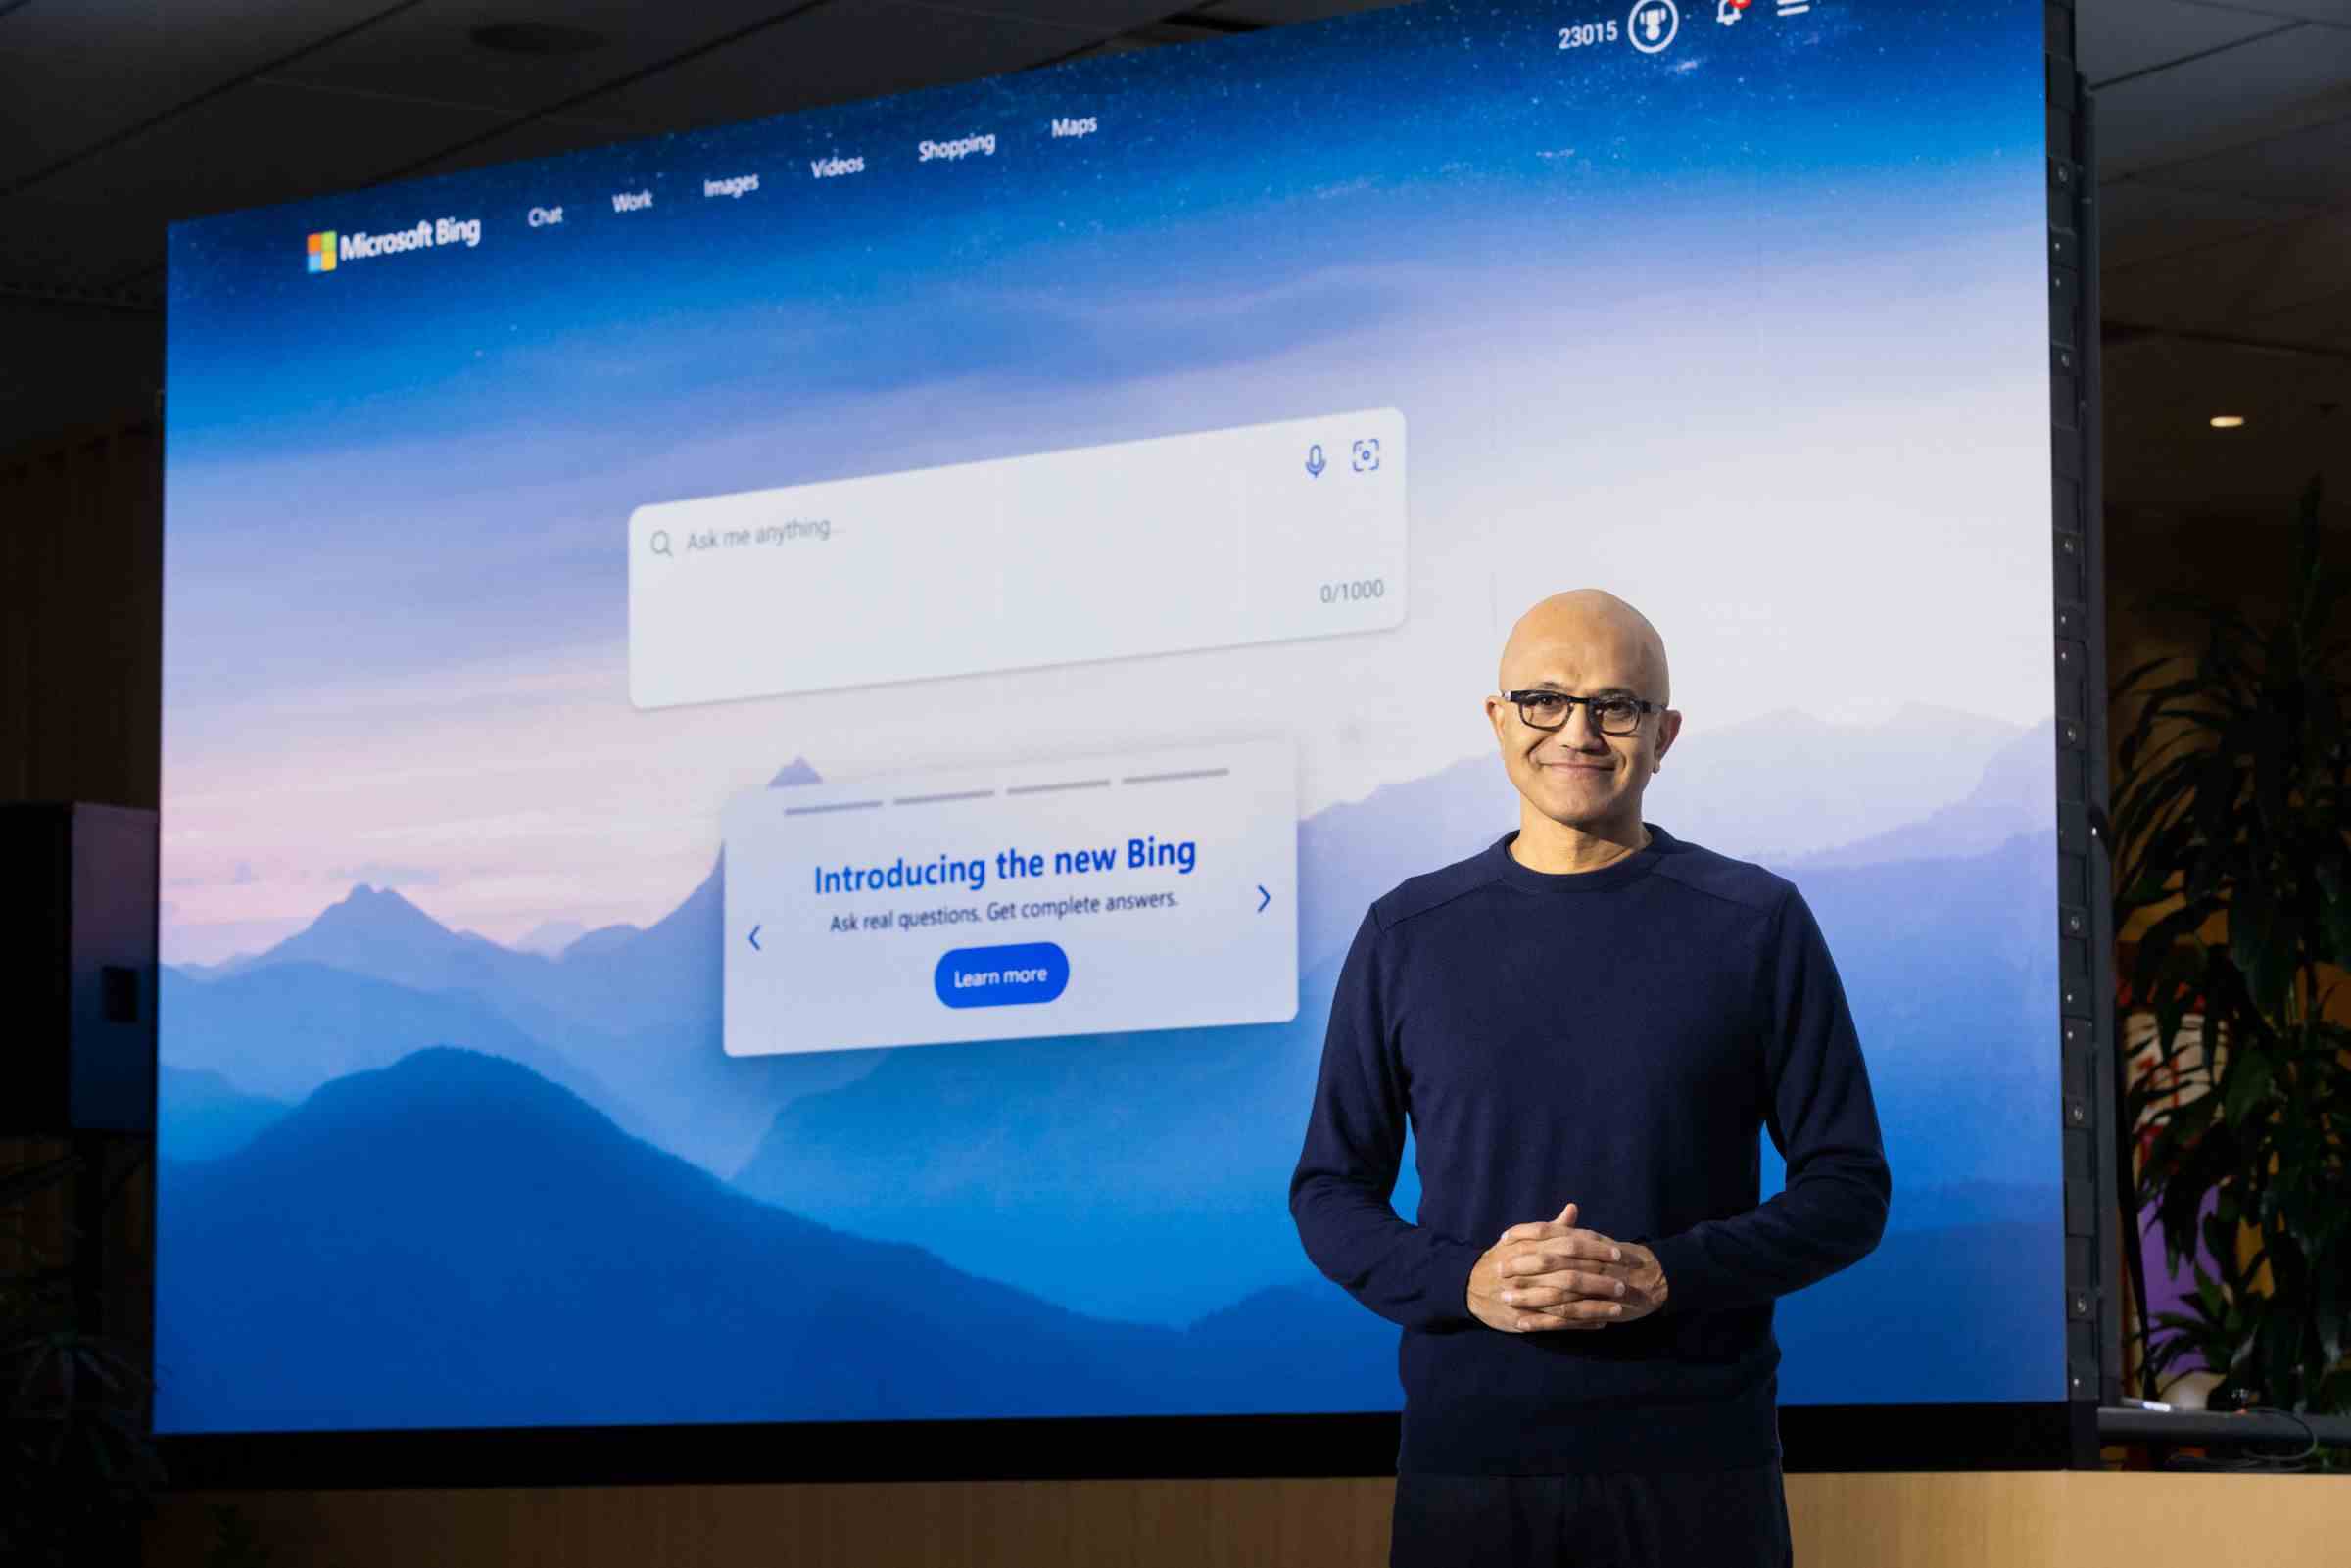 Microsoft CEO'su Satya Nadella, Bing etkinliği için erkenden sahneye çıktı.